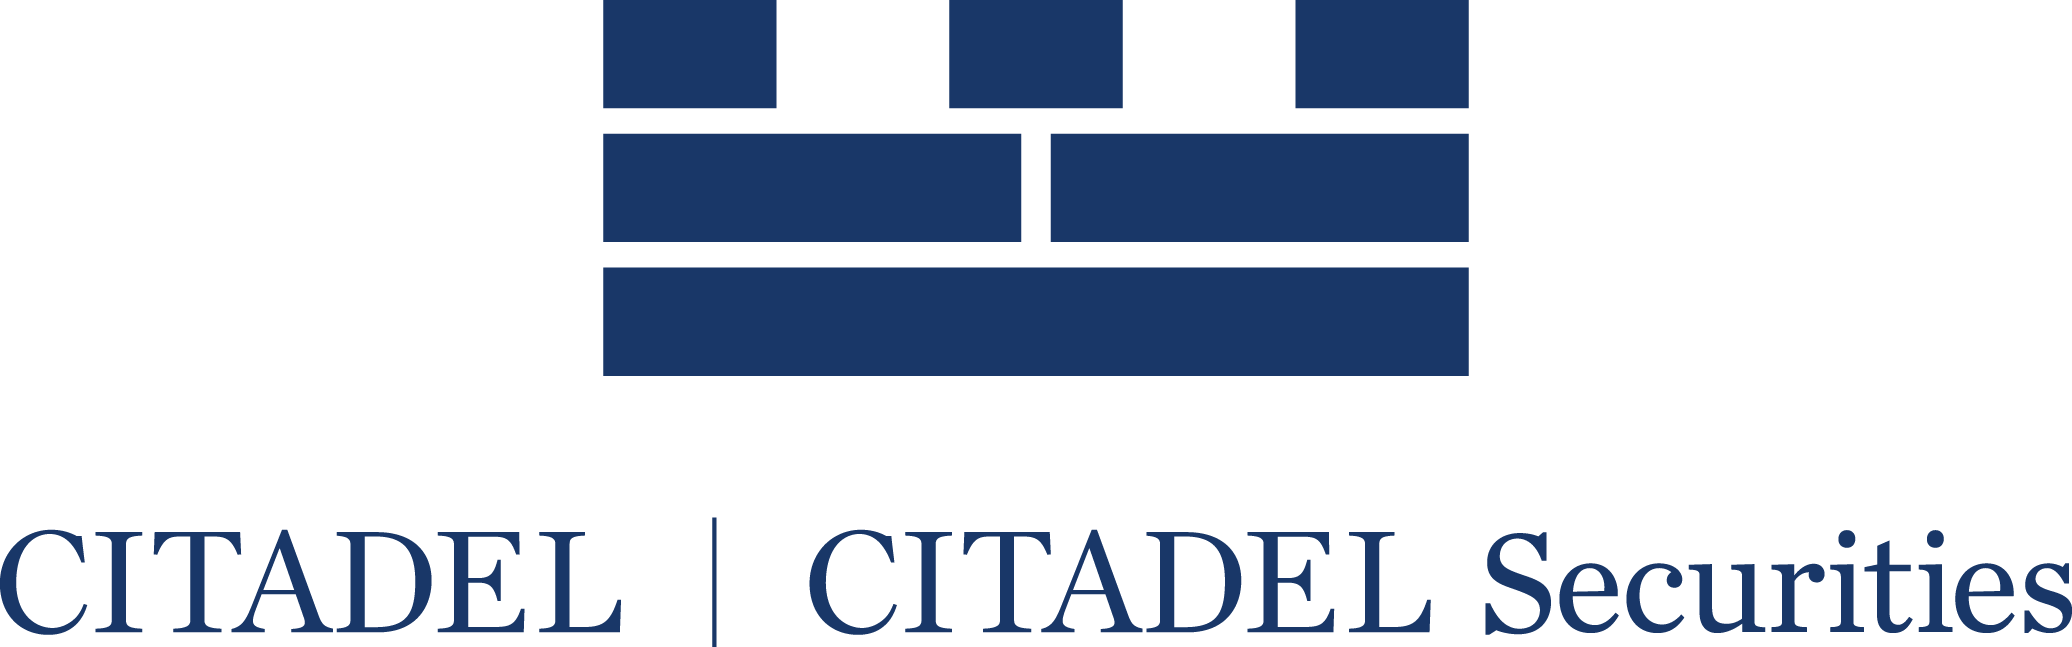 citadel.png logo